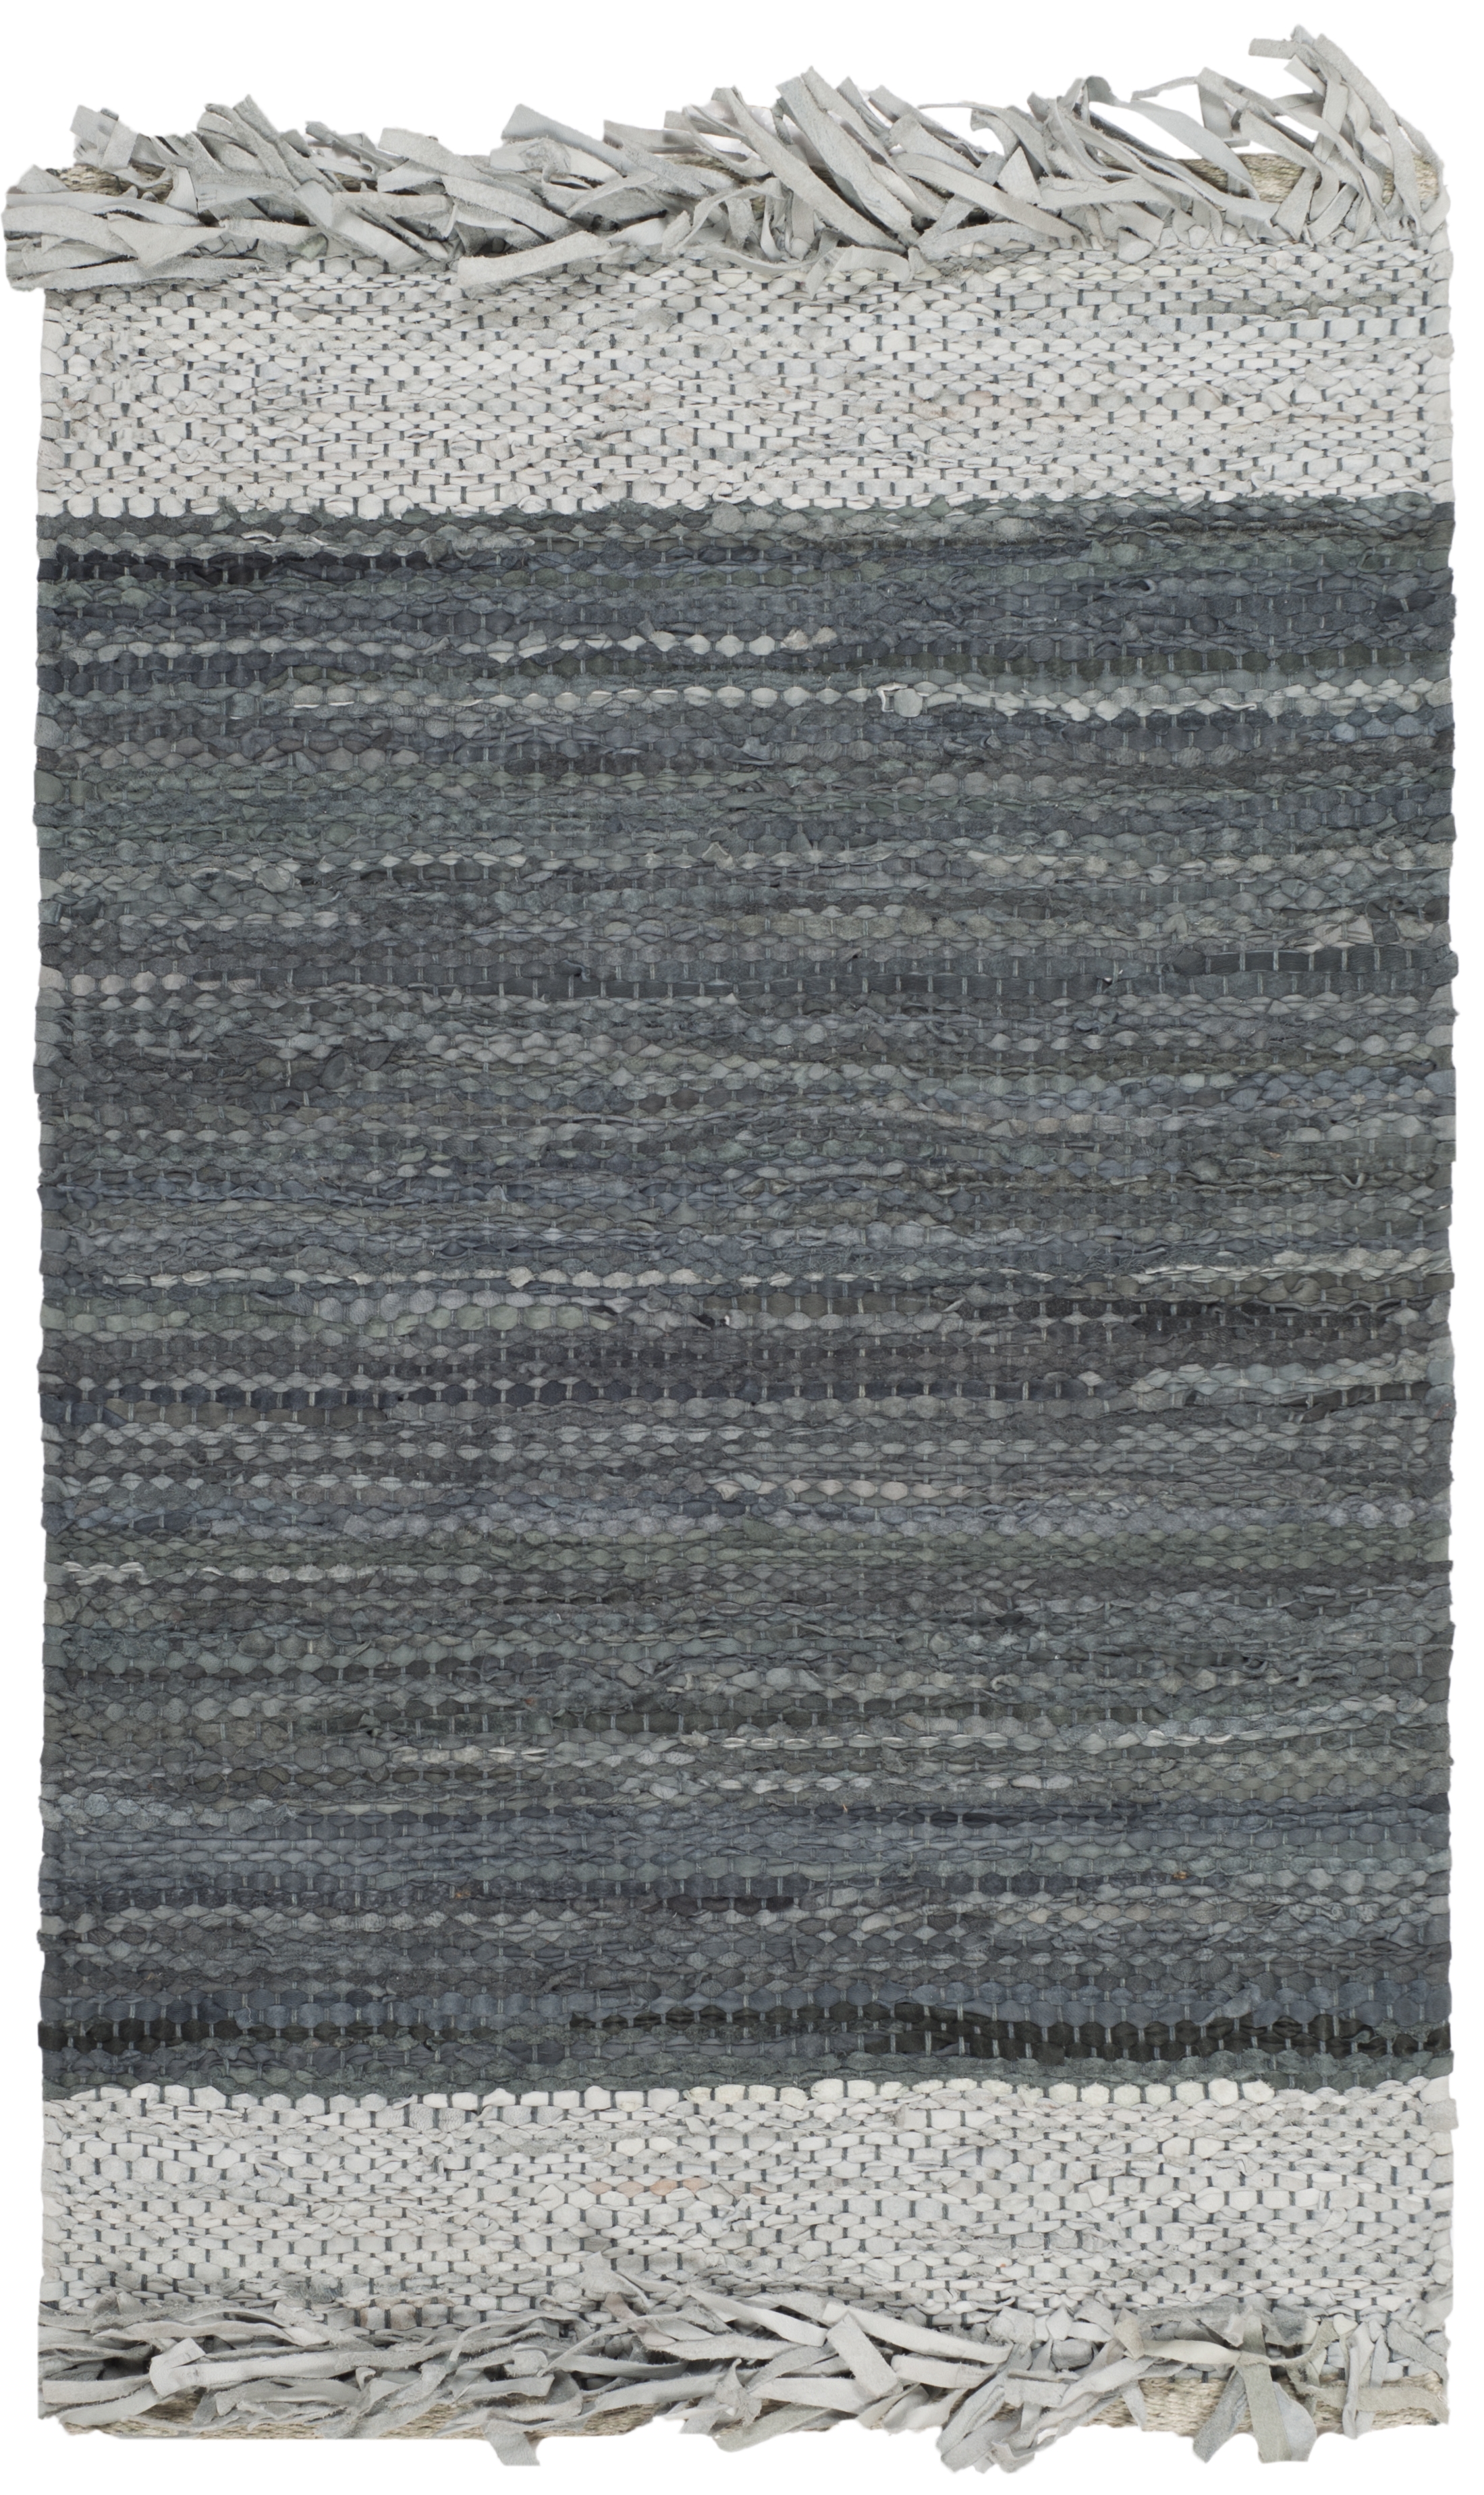 Arlo Home Hand Woven Area Rug, VTL310A, Light Grey/Dark Grey,  2' X 3' - Image 0